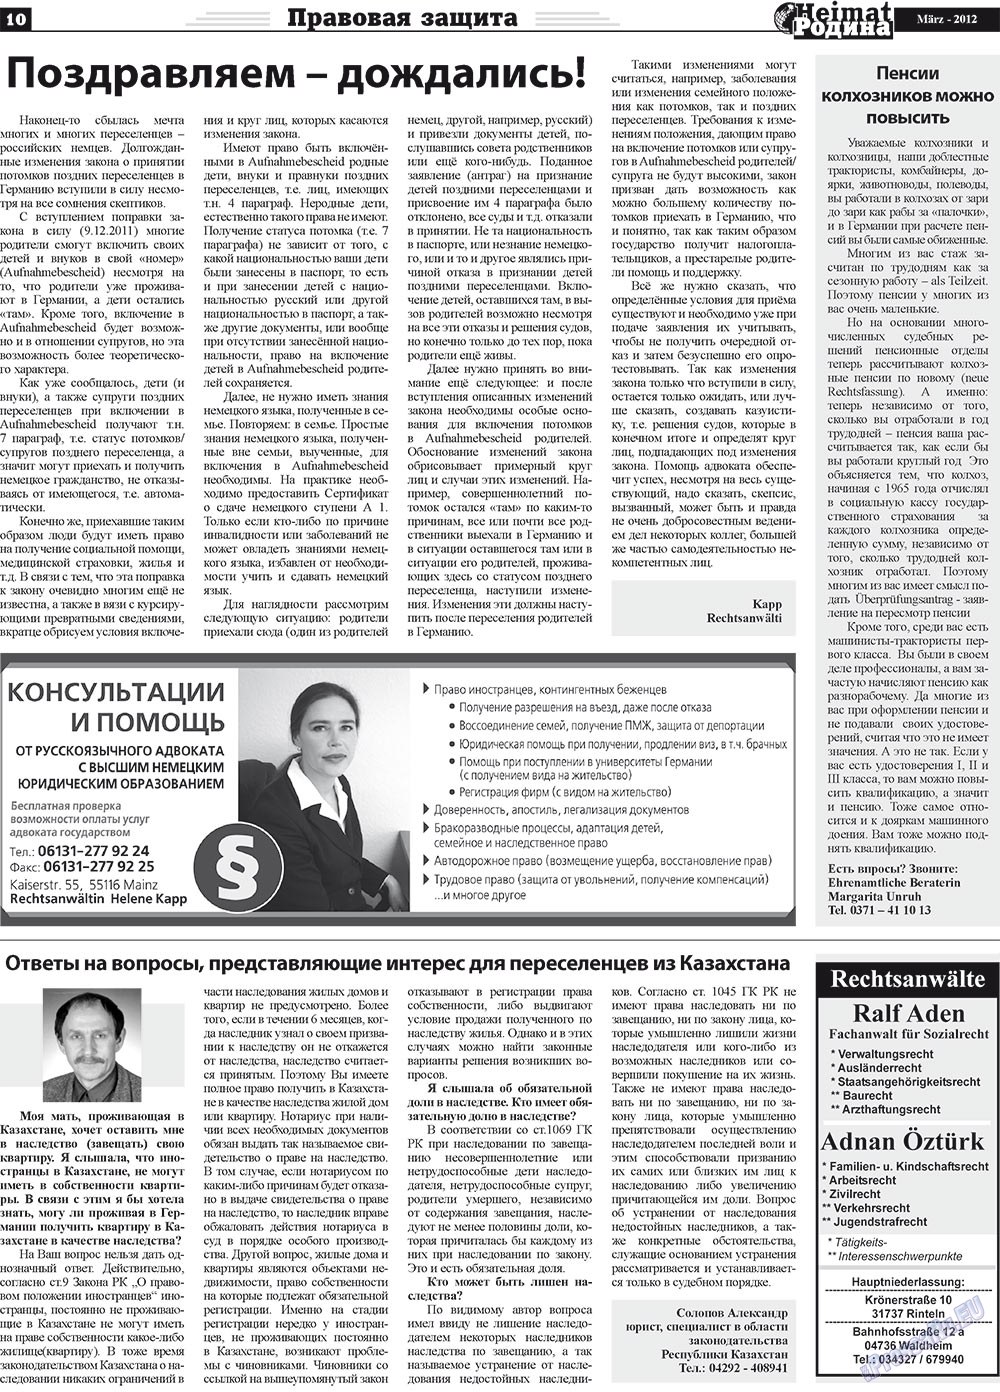 Heimat-Родина (газета). 2012 год, номер 3, стр. 10